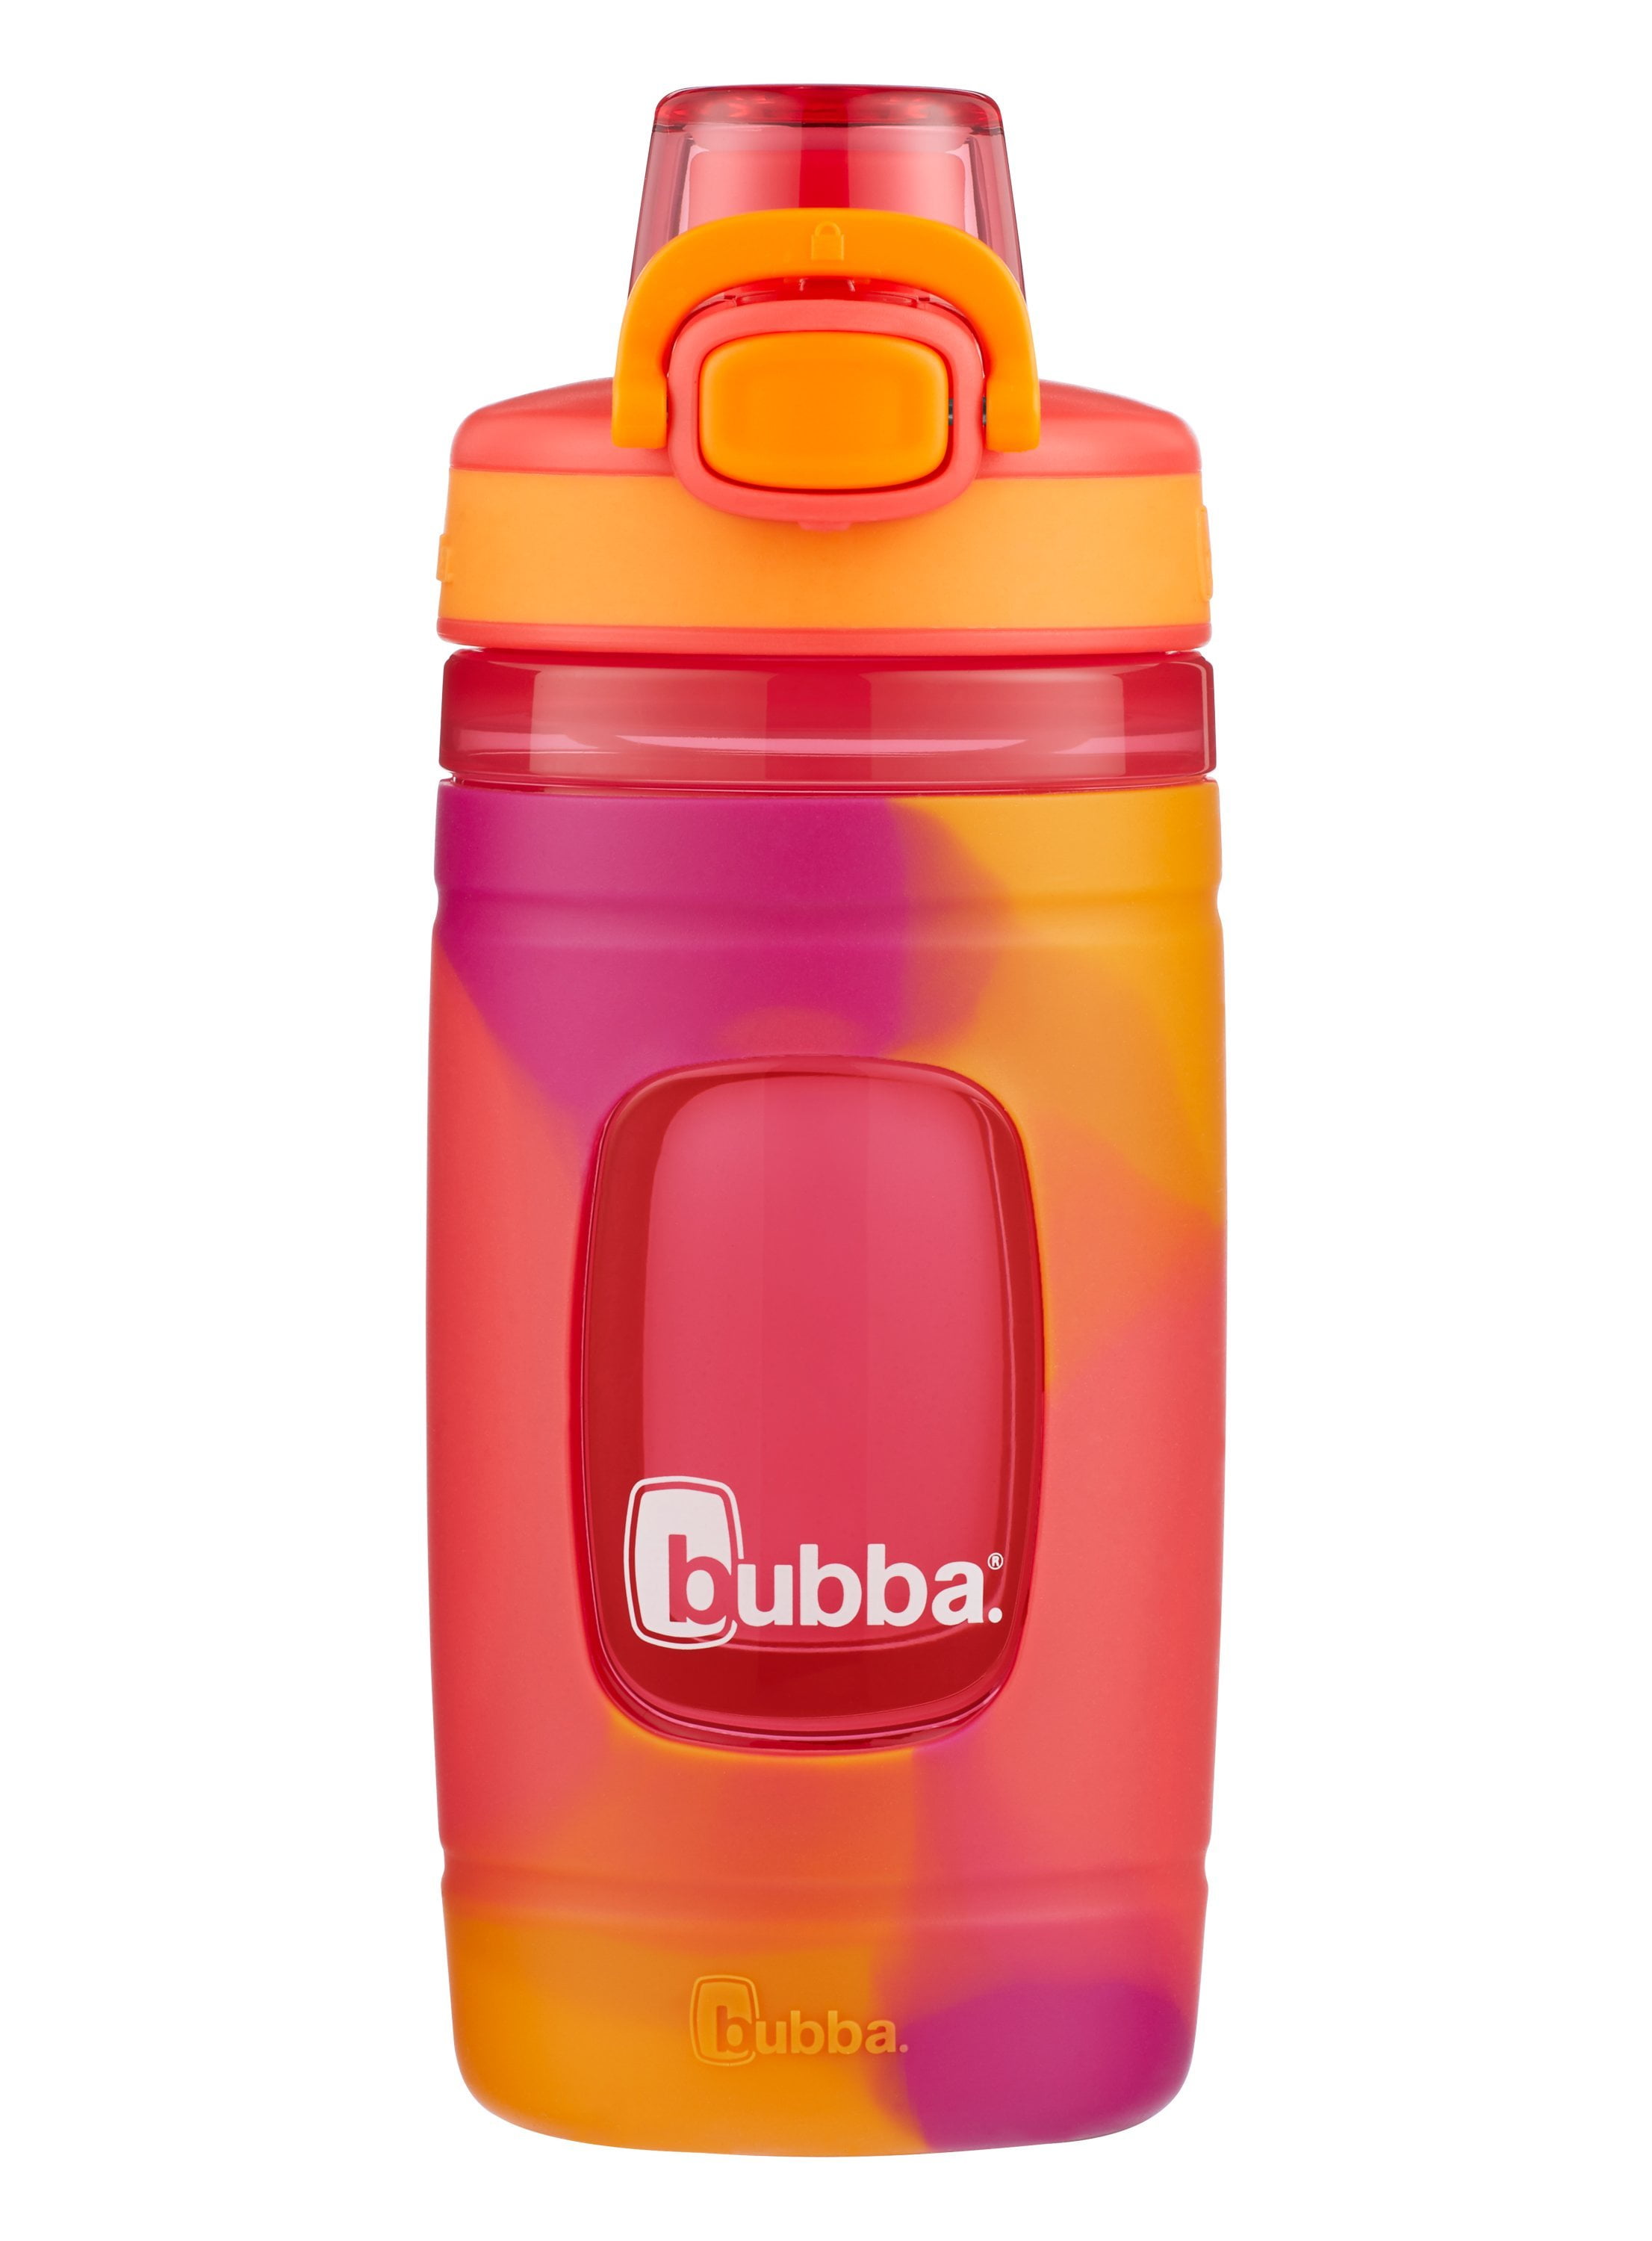 bubba Flo Kids Water Bottle Red Electric Berry & Orange Mango Tie Dye, 16  fl oz. 